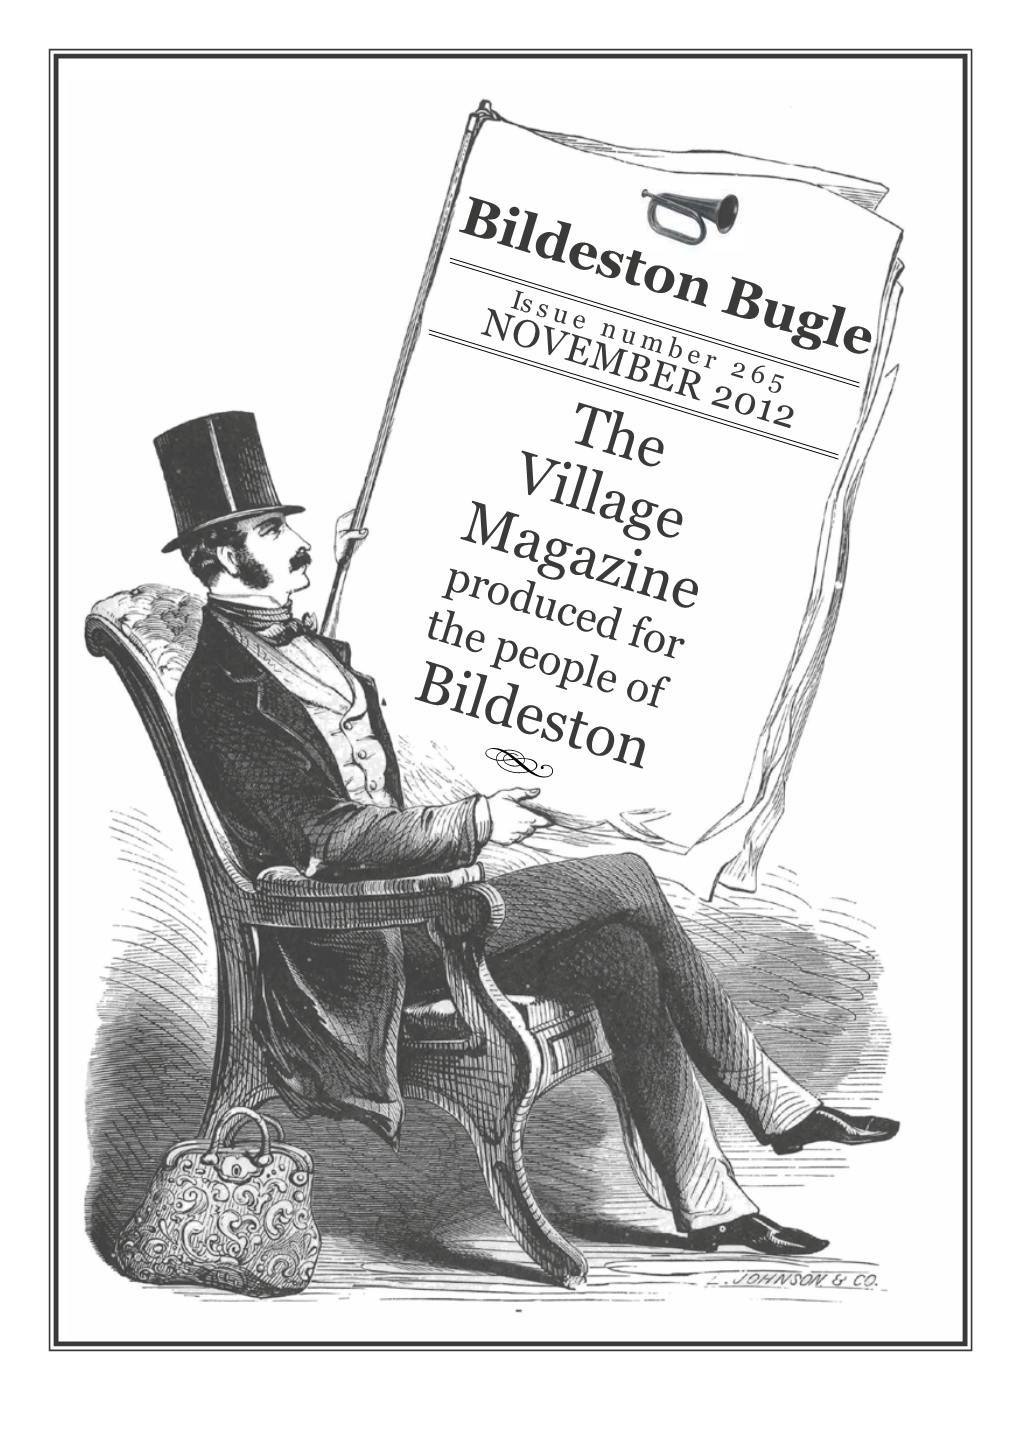 The Village Magazine Bildeston D